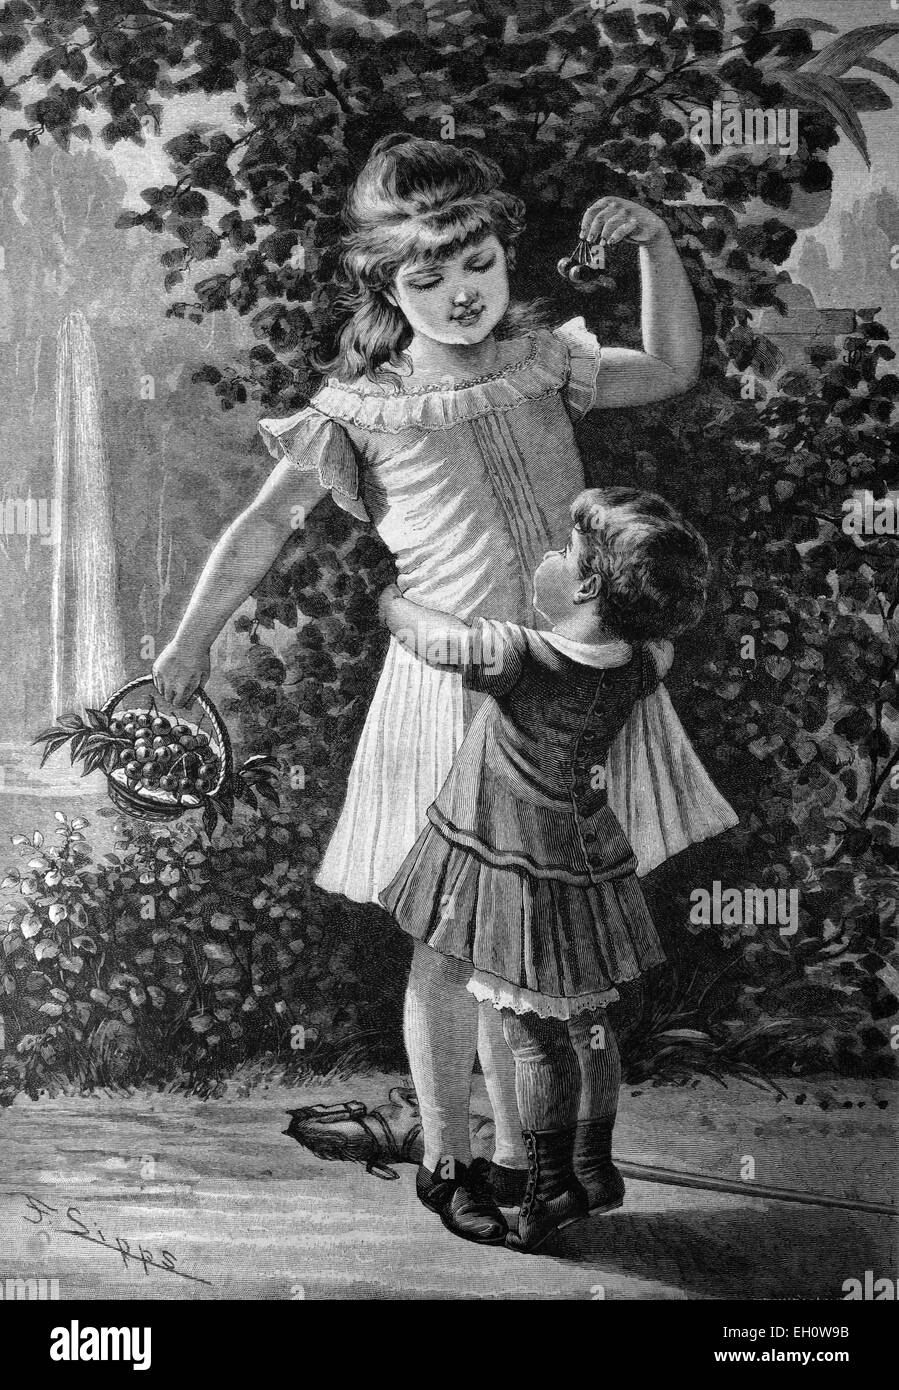 Les enfants avec les cerises, illustration historique, vers 1886 Banque D'Images